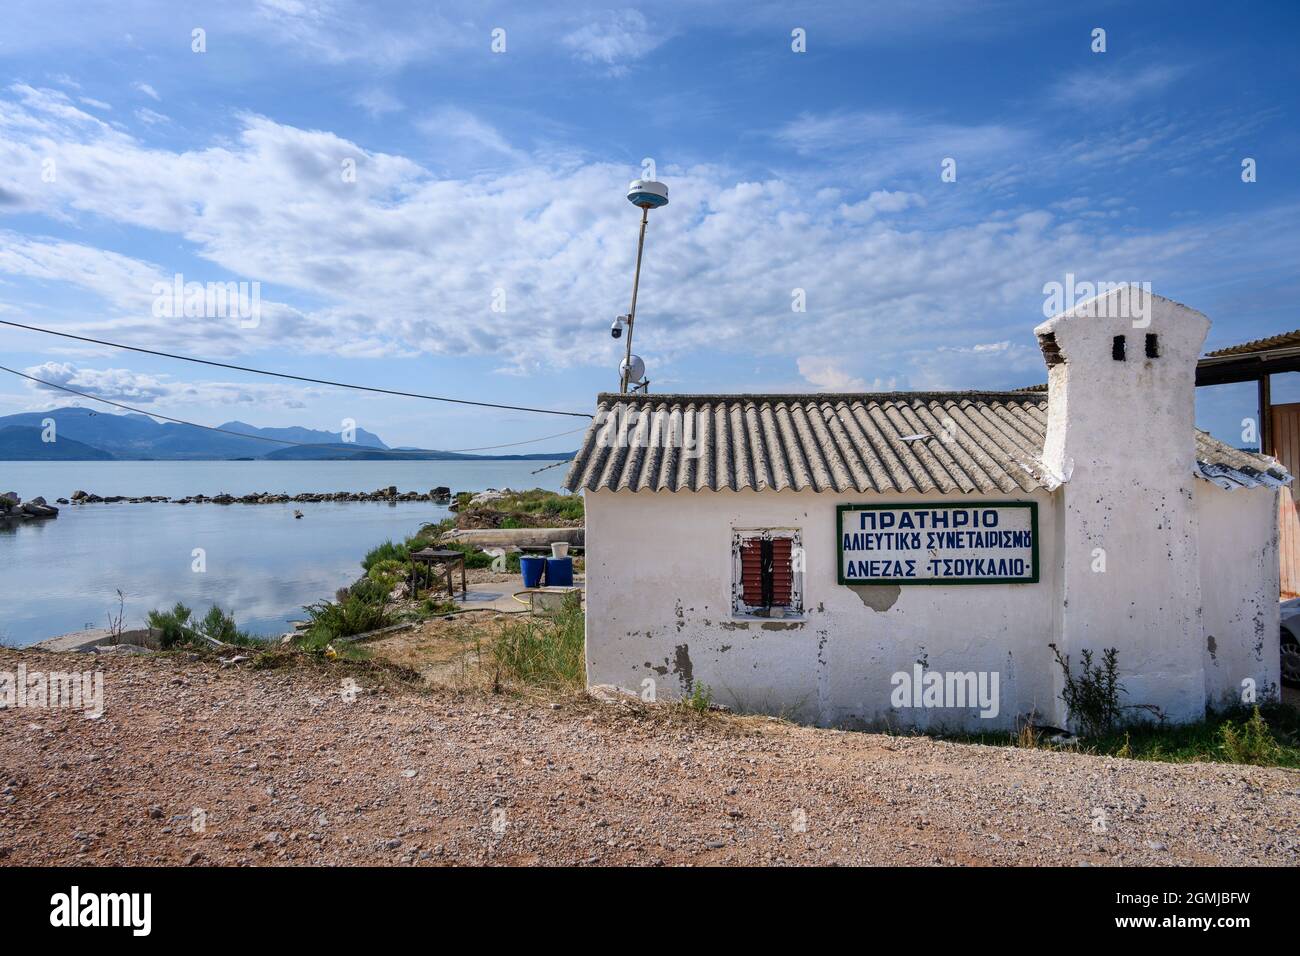 Une station coopérative de pêche et un piège à poisson dans la lagune de Tsoukaliou, Golfe Ambracien, Municipalité d'Arta, Epirus, Grèce. Banque D'Images